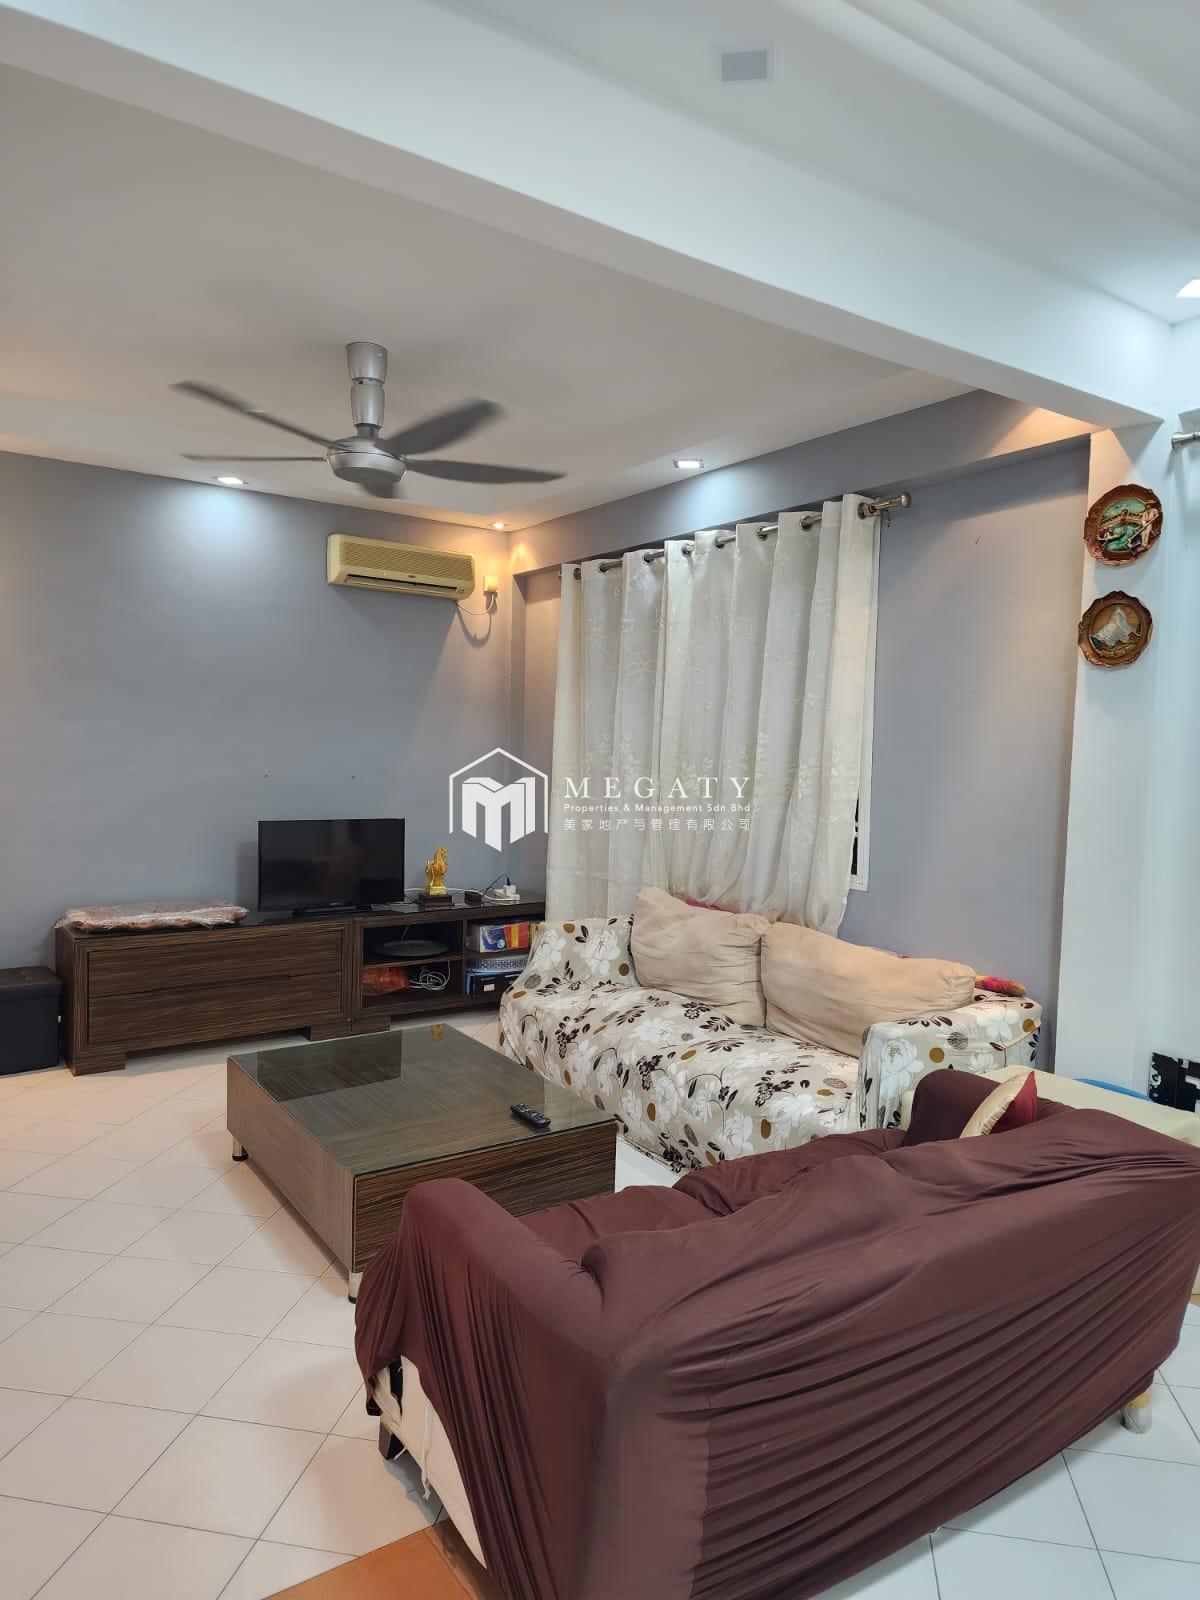 Megaty Property - For Rent & Sale

Bayu Puteri 1 @ Taman Bayu Puteri
